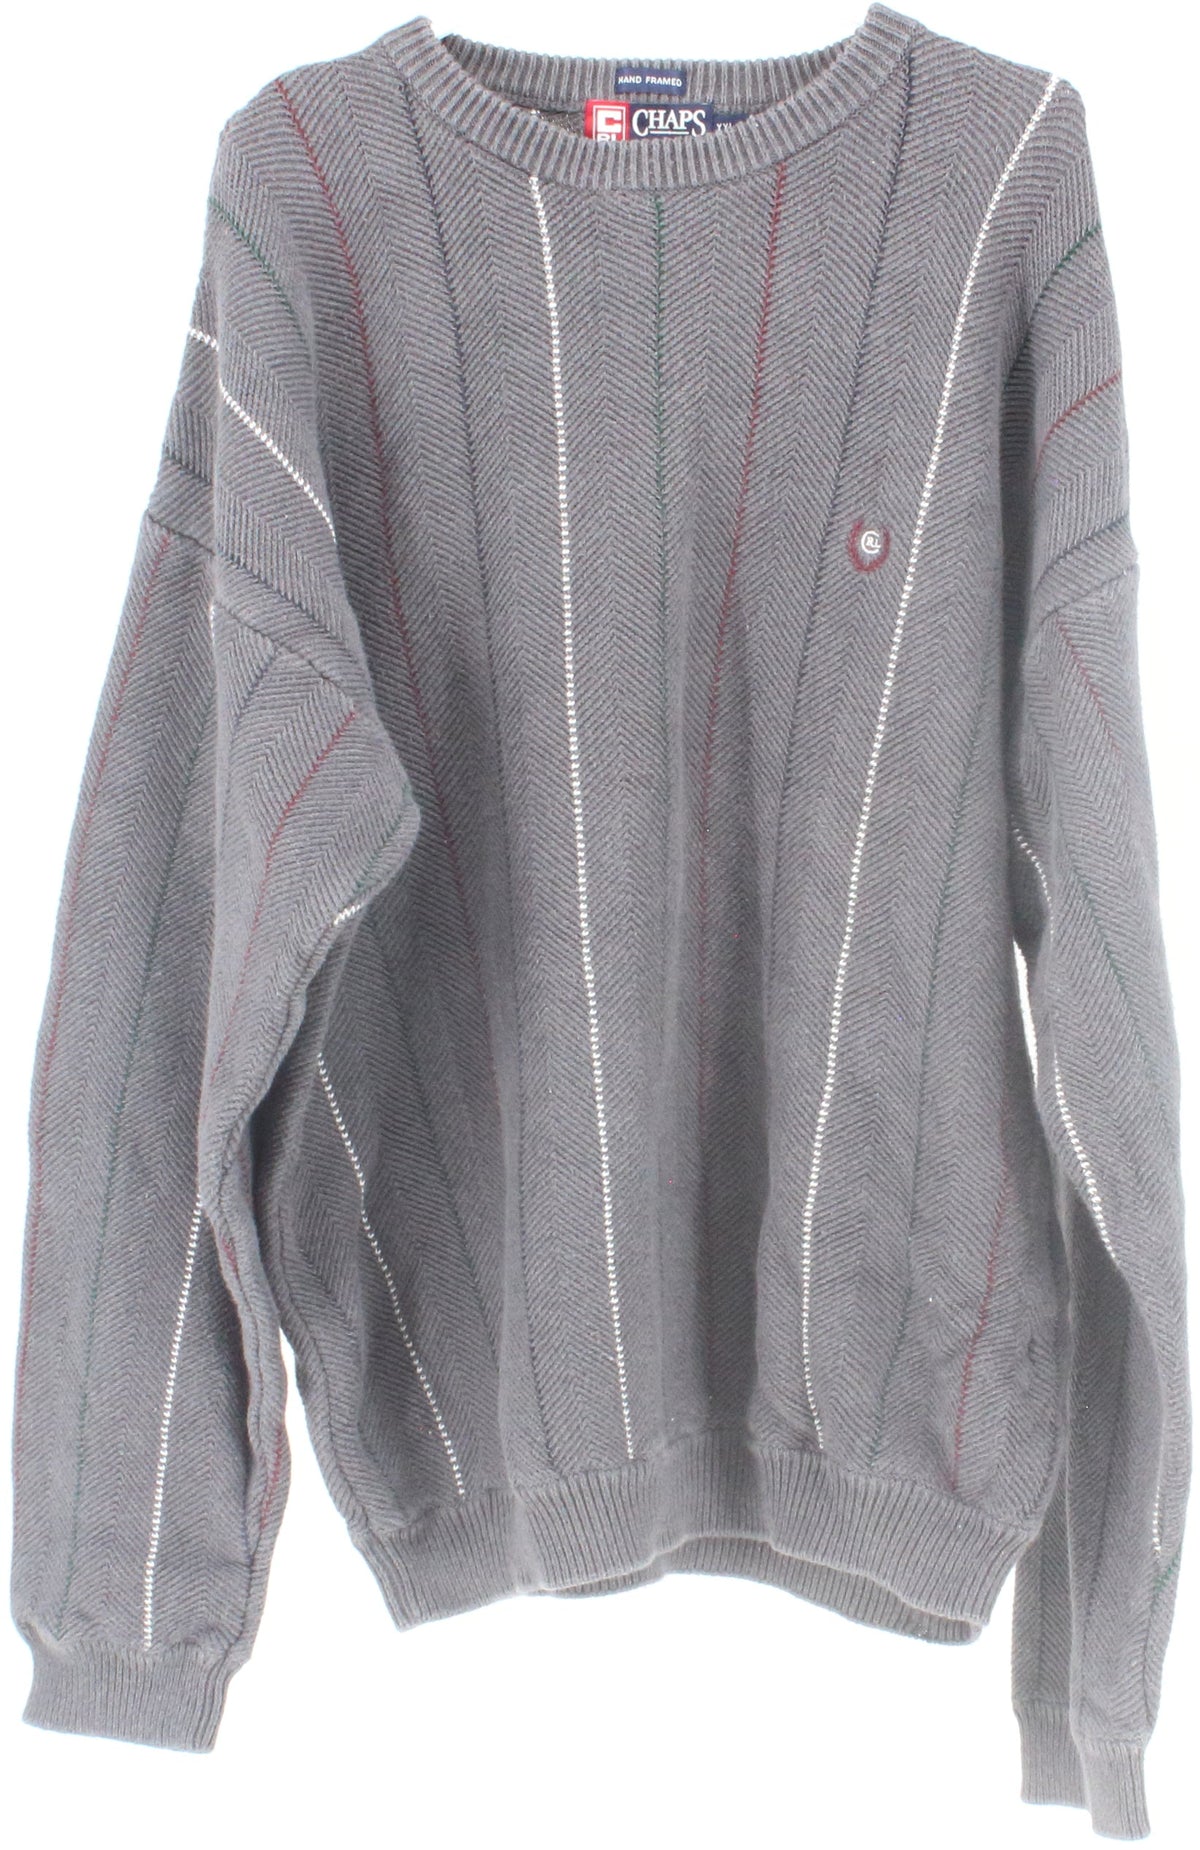 Chaps Ralph Lauren Hand Framed Grey Striped Men's Sweater